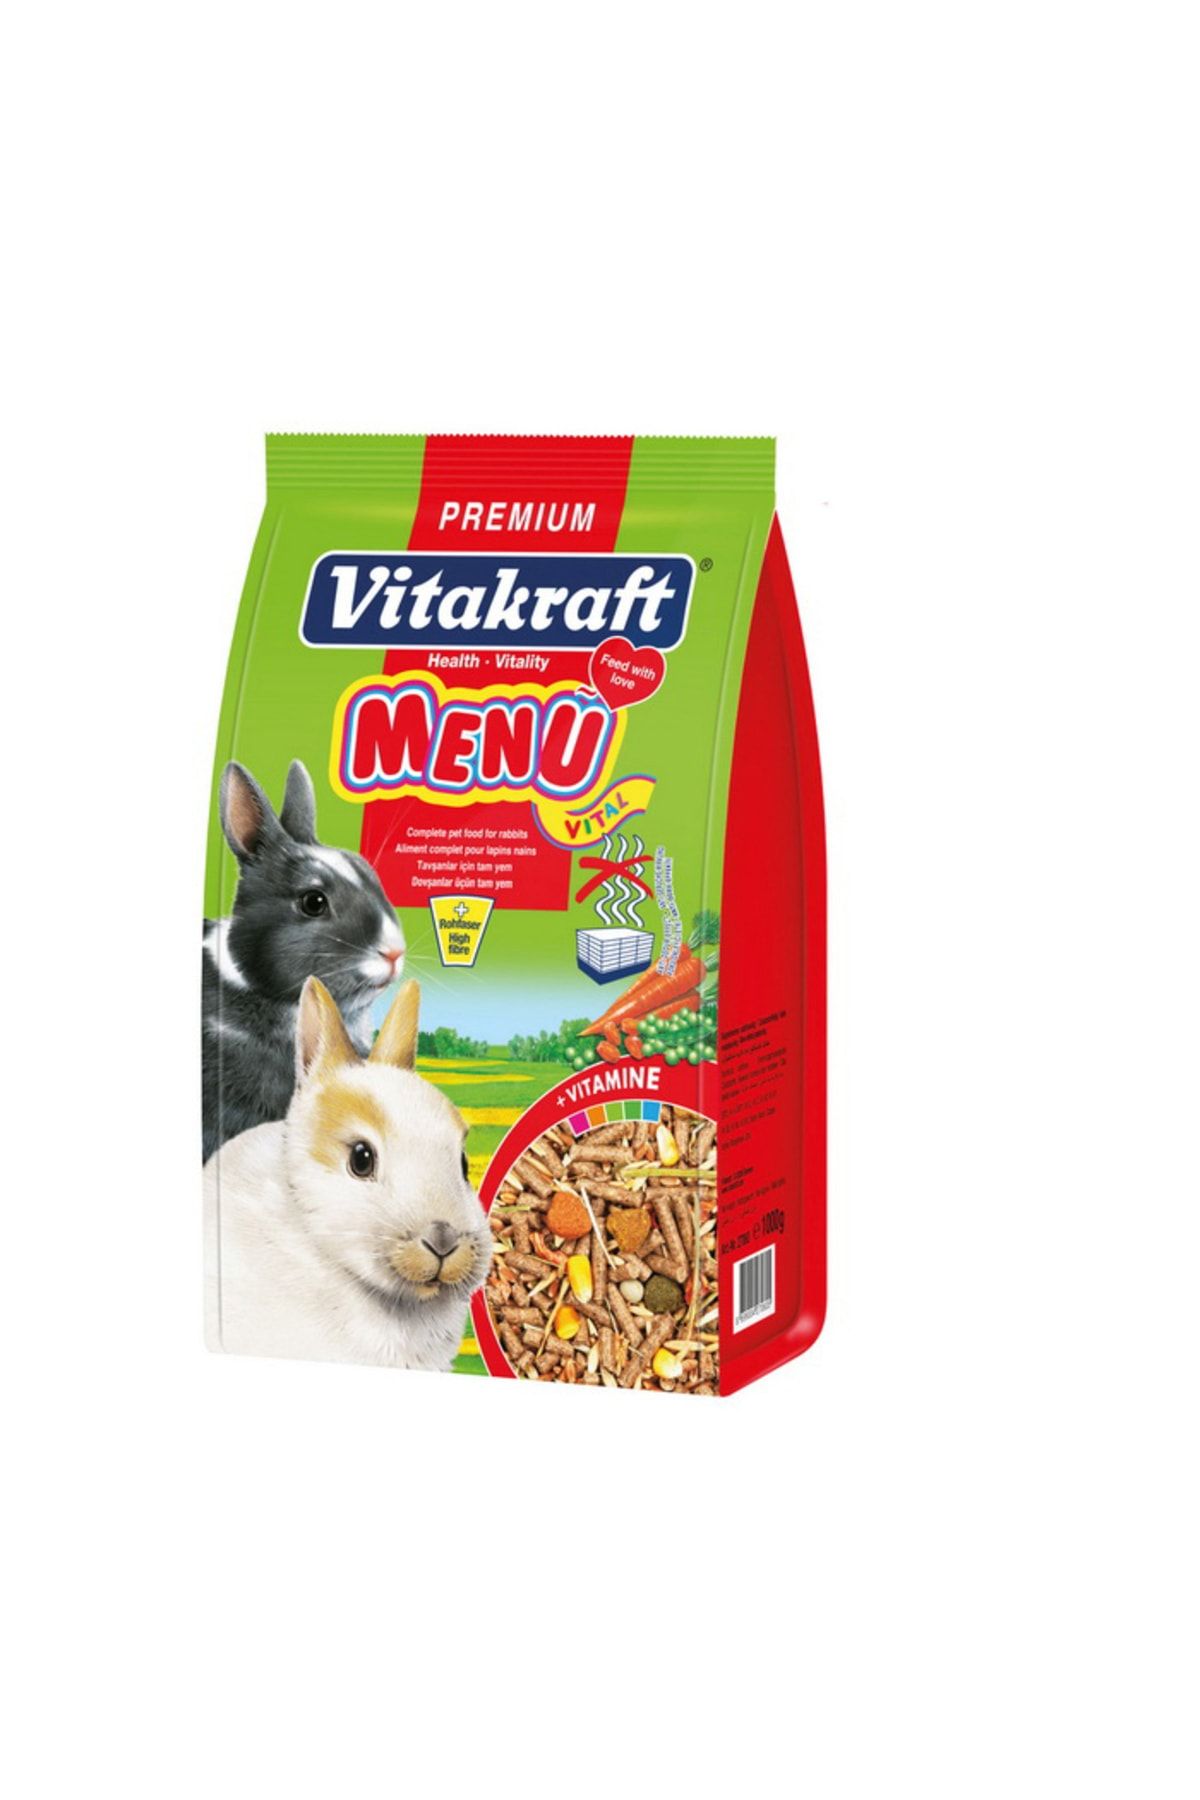 Vitakraft Tavşan Menü Vital Premium 1 Kg